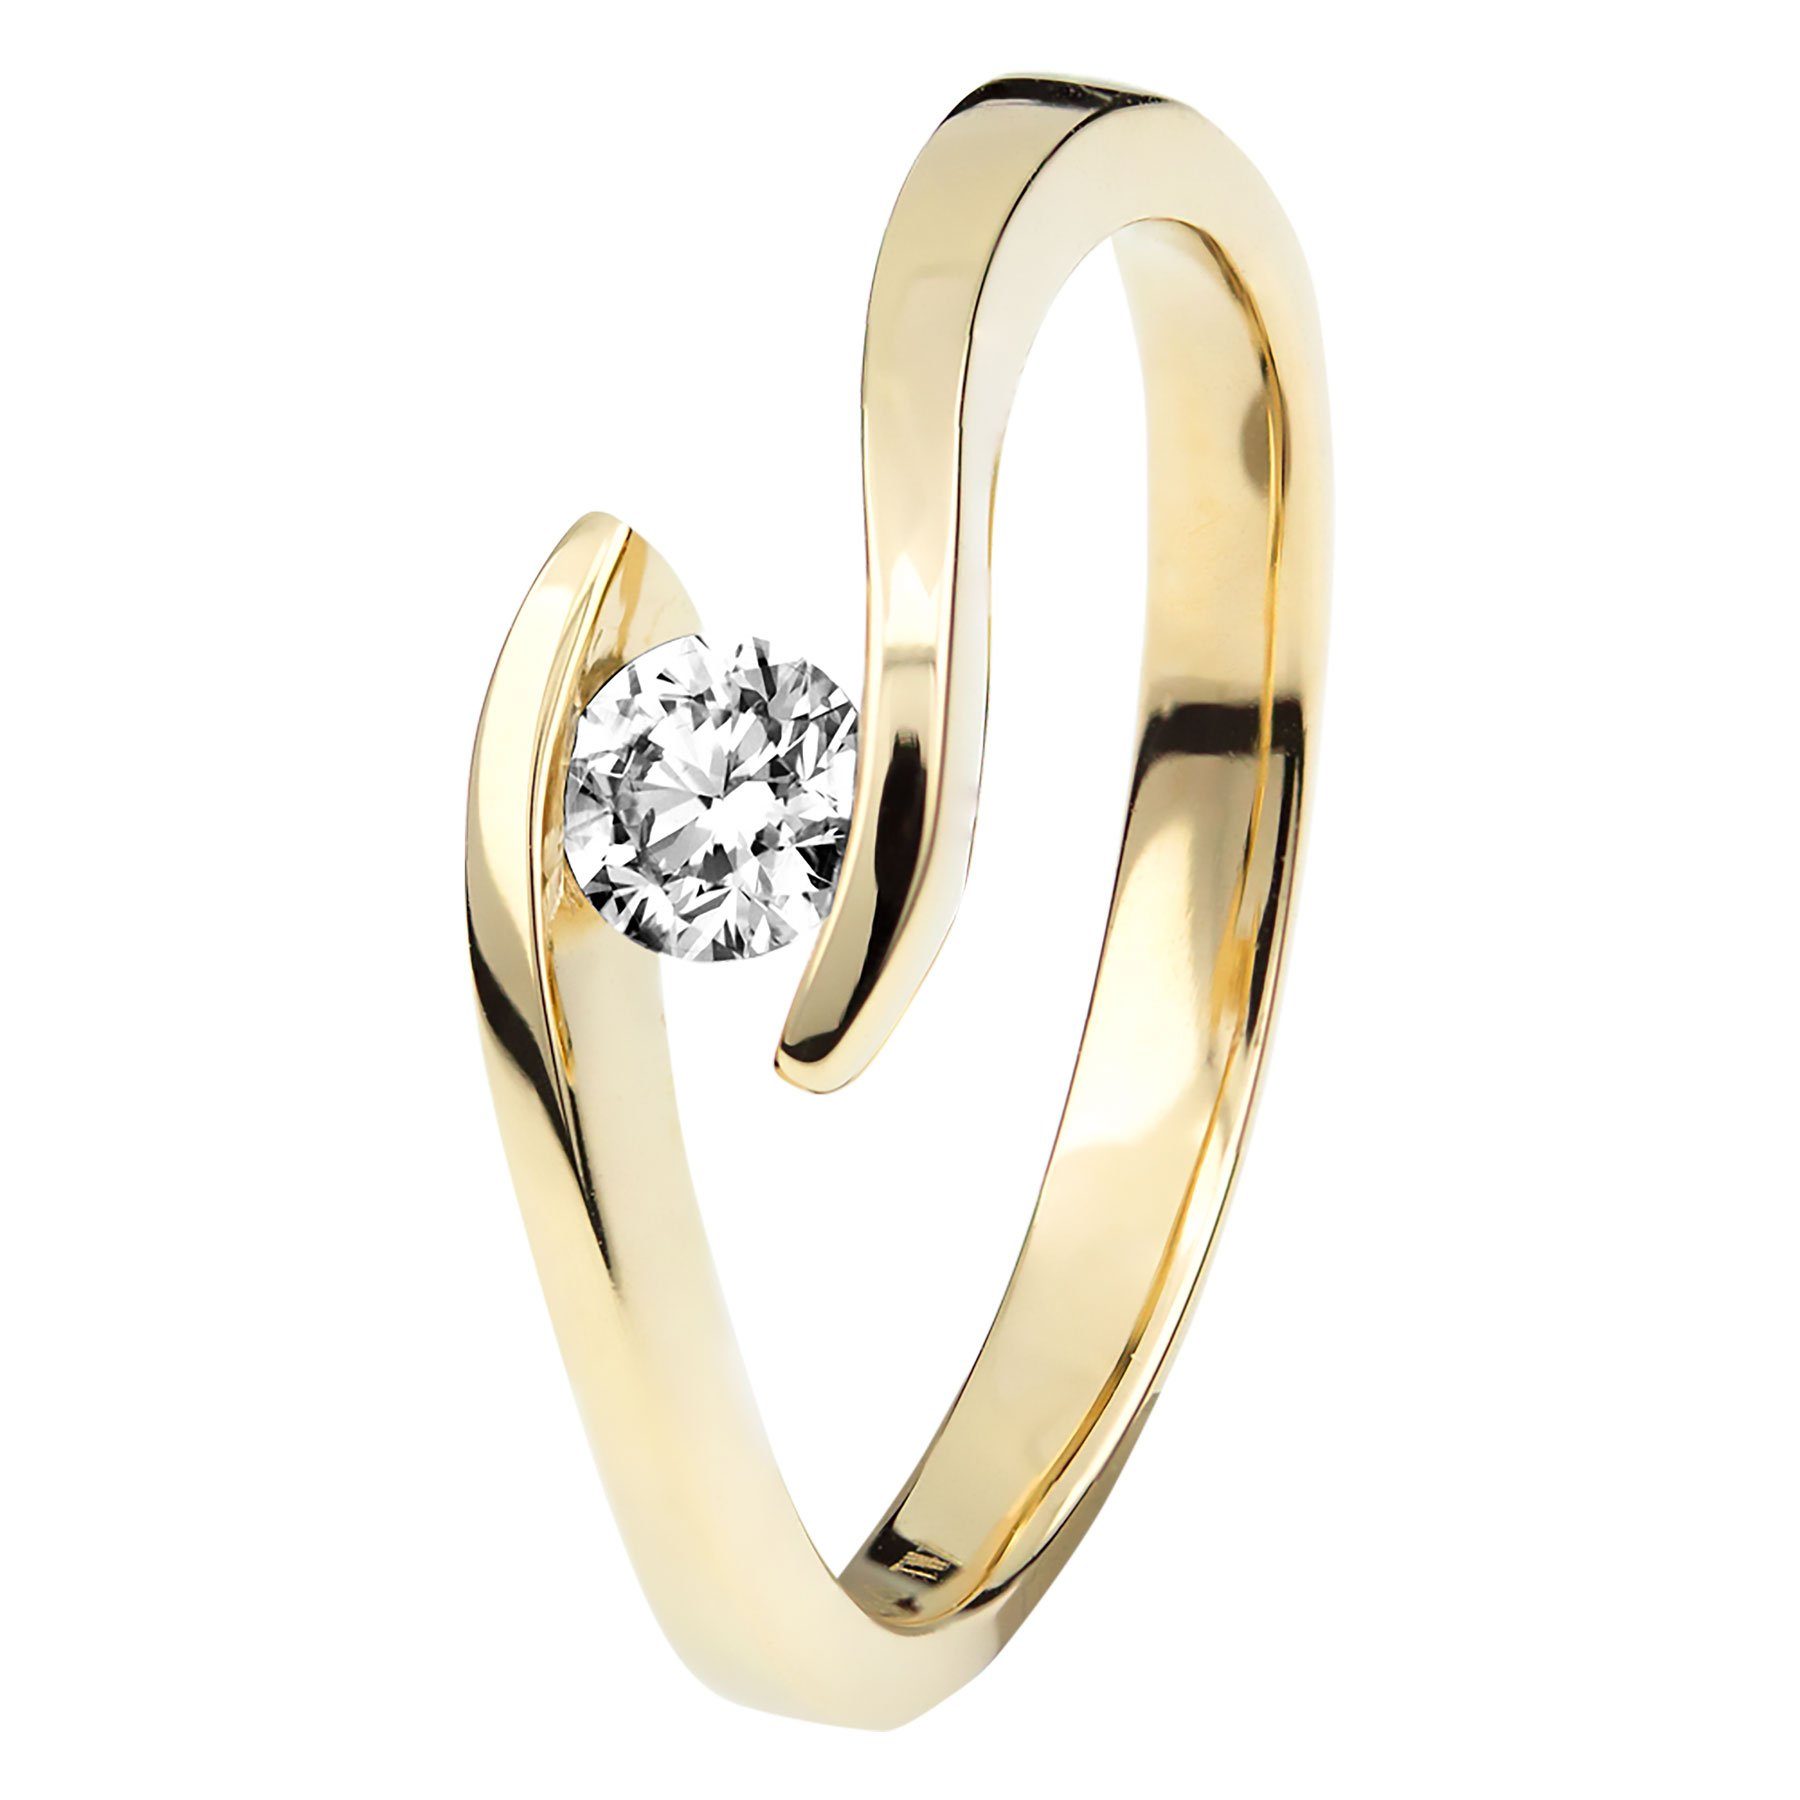 Herren Schmuck Stella-Jewellery Verlobungsring 585er Gelbgold Spannring mit Diamant Gr. 54 (inkl. Etui), mit Brillant 0,05ct. - 